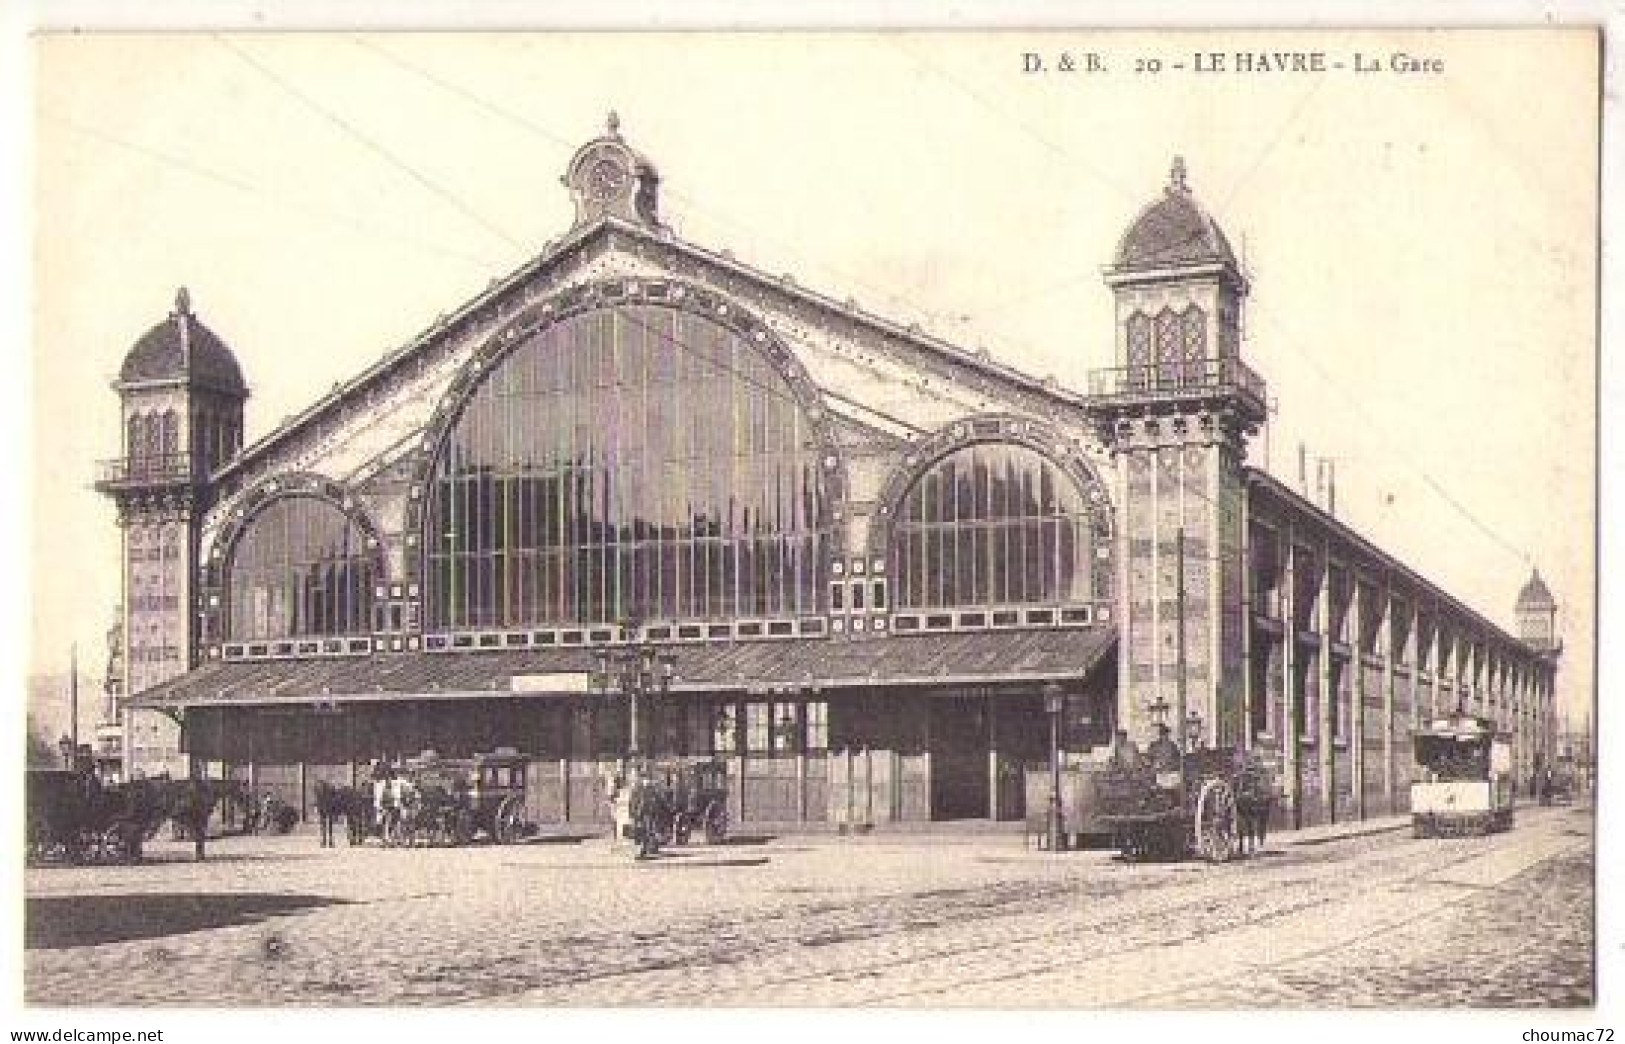 (76) 063, Le Havre, D & B 20, La Gare, Tramway - Bahnhof